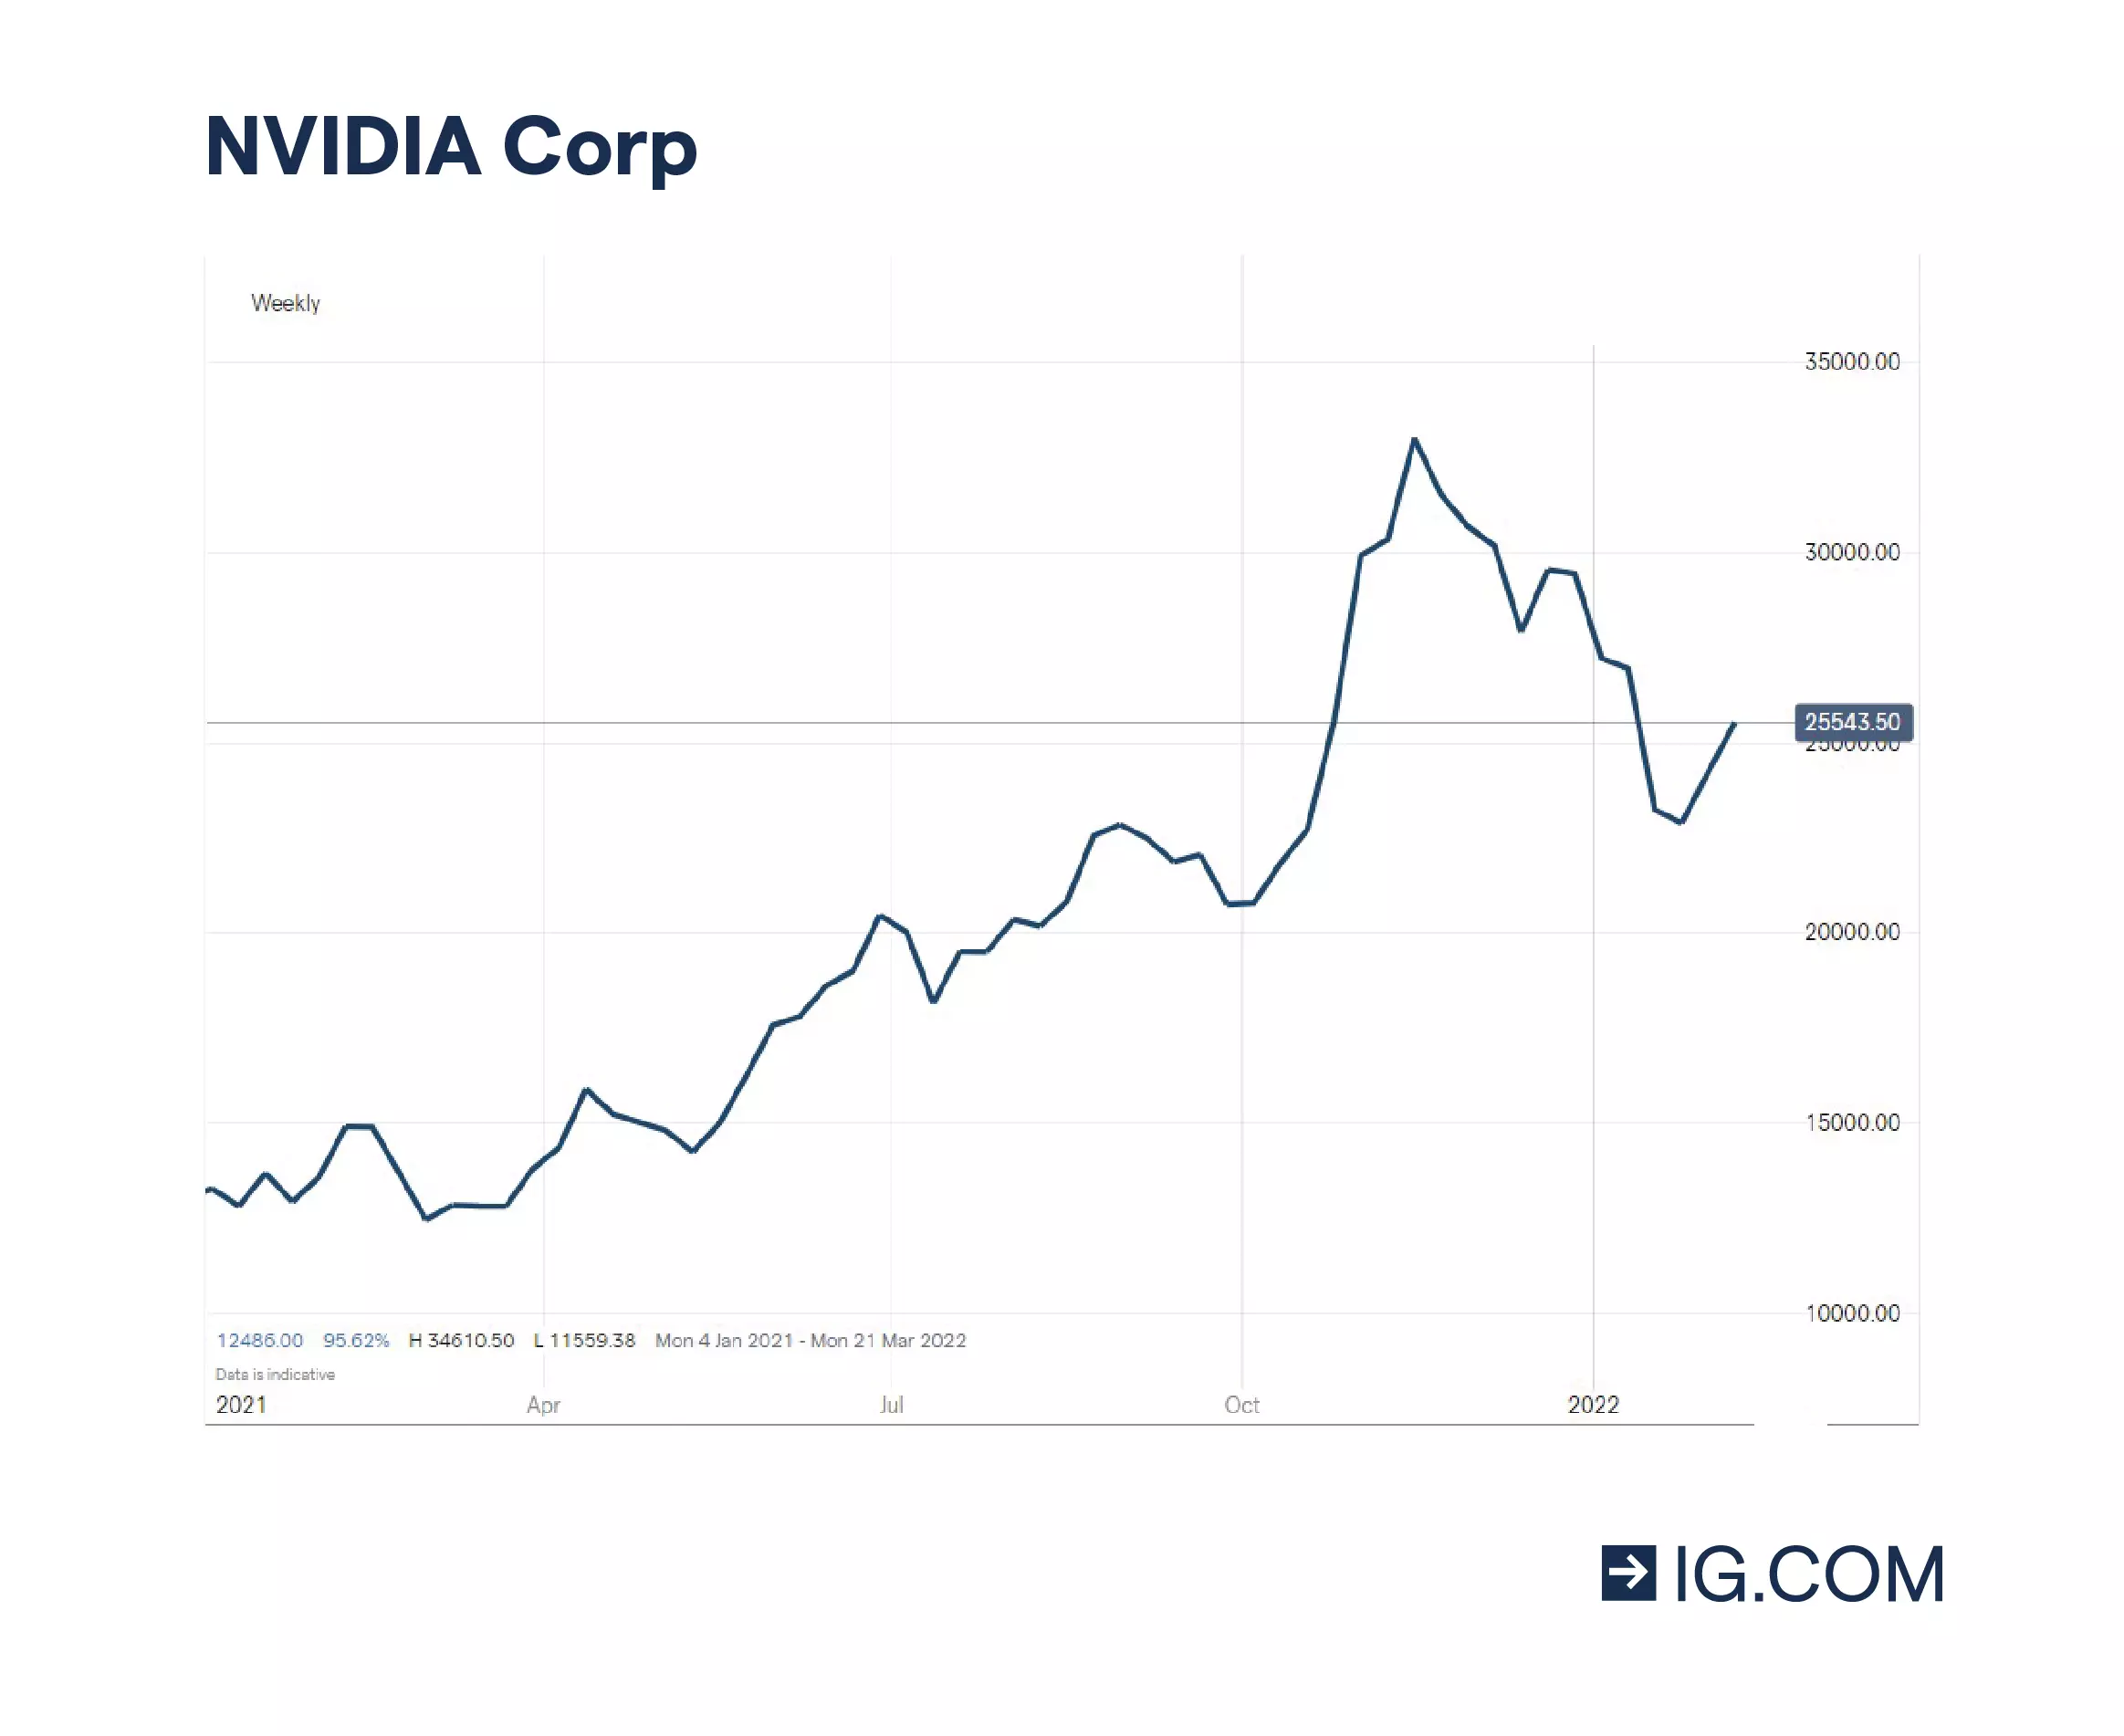 Historique récent des cours de NVIDIA , qui montre une croissance impressionnante depuis son entrée dans le monde de l'informatique quantique.